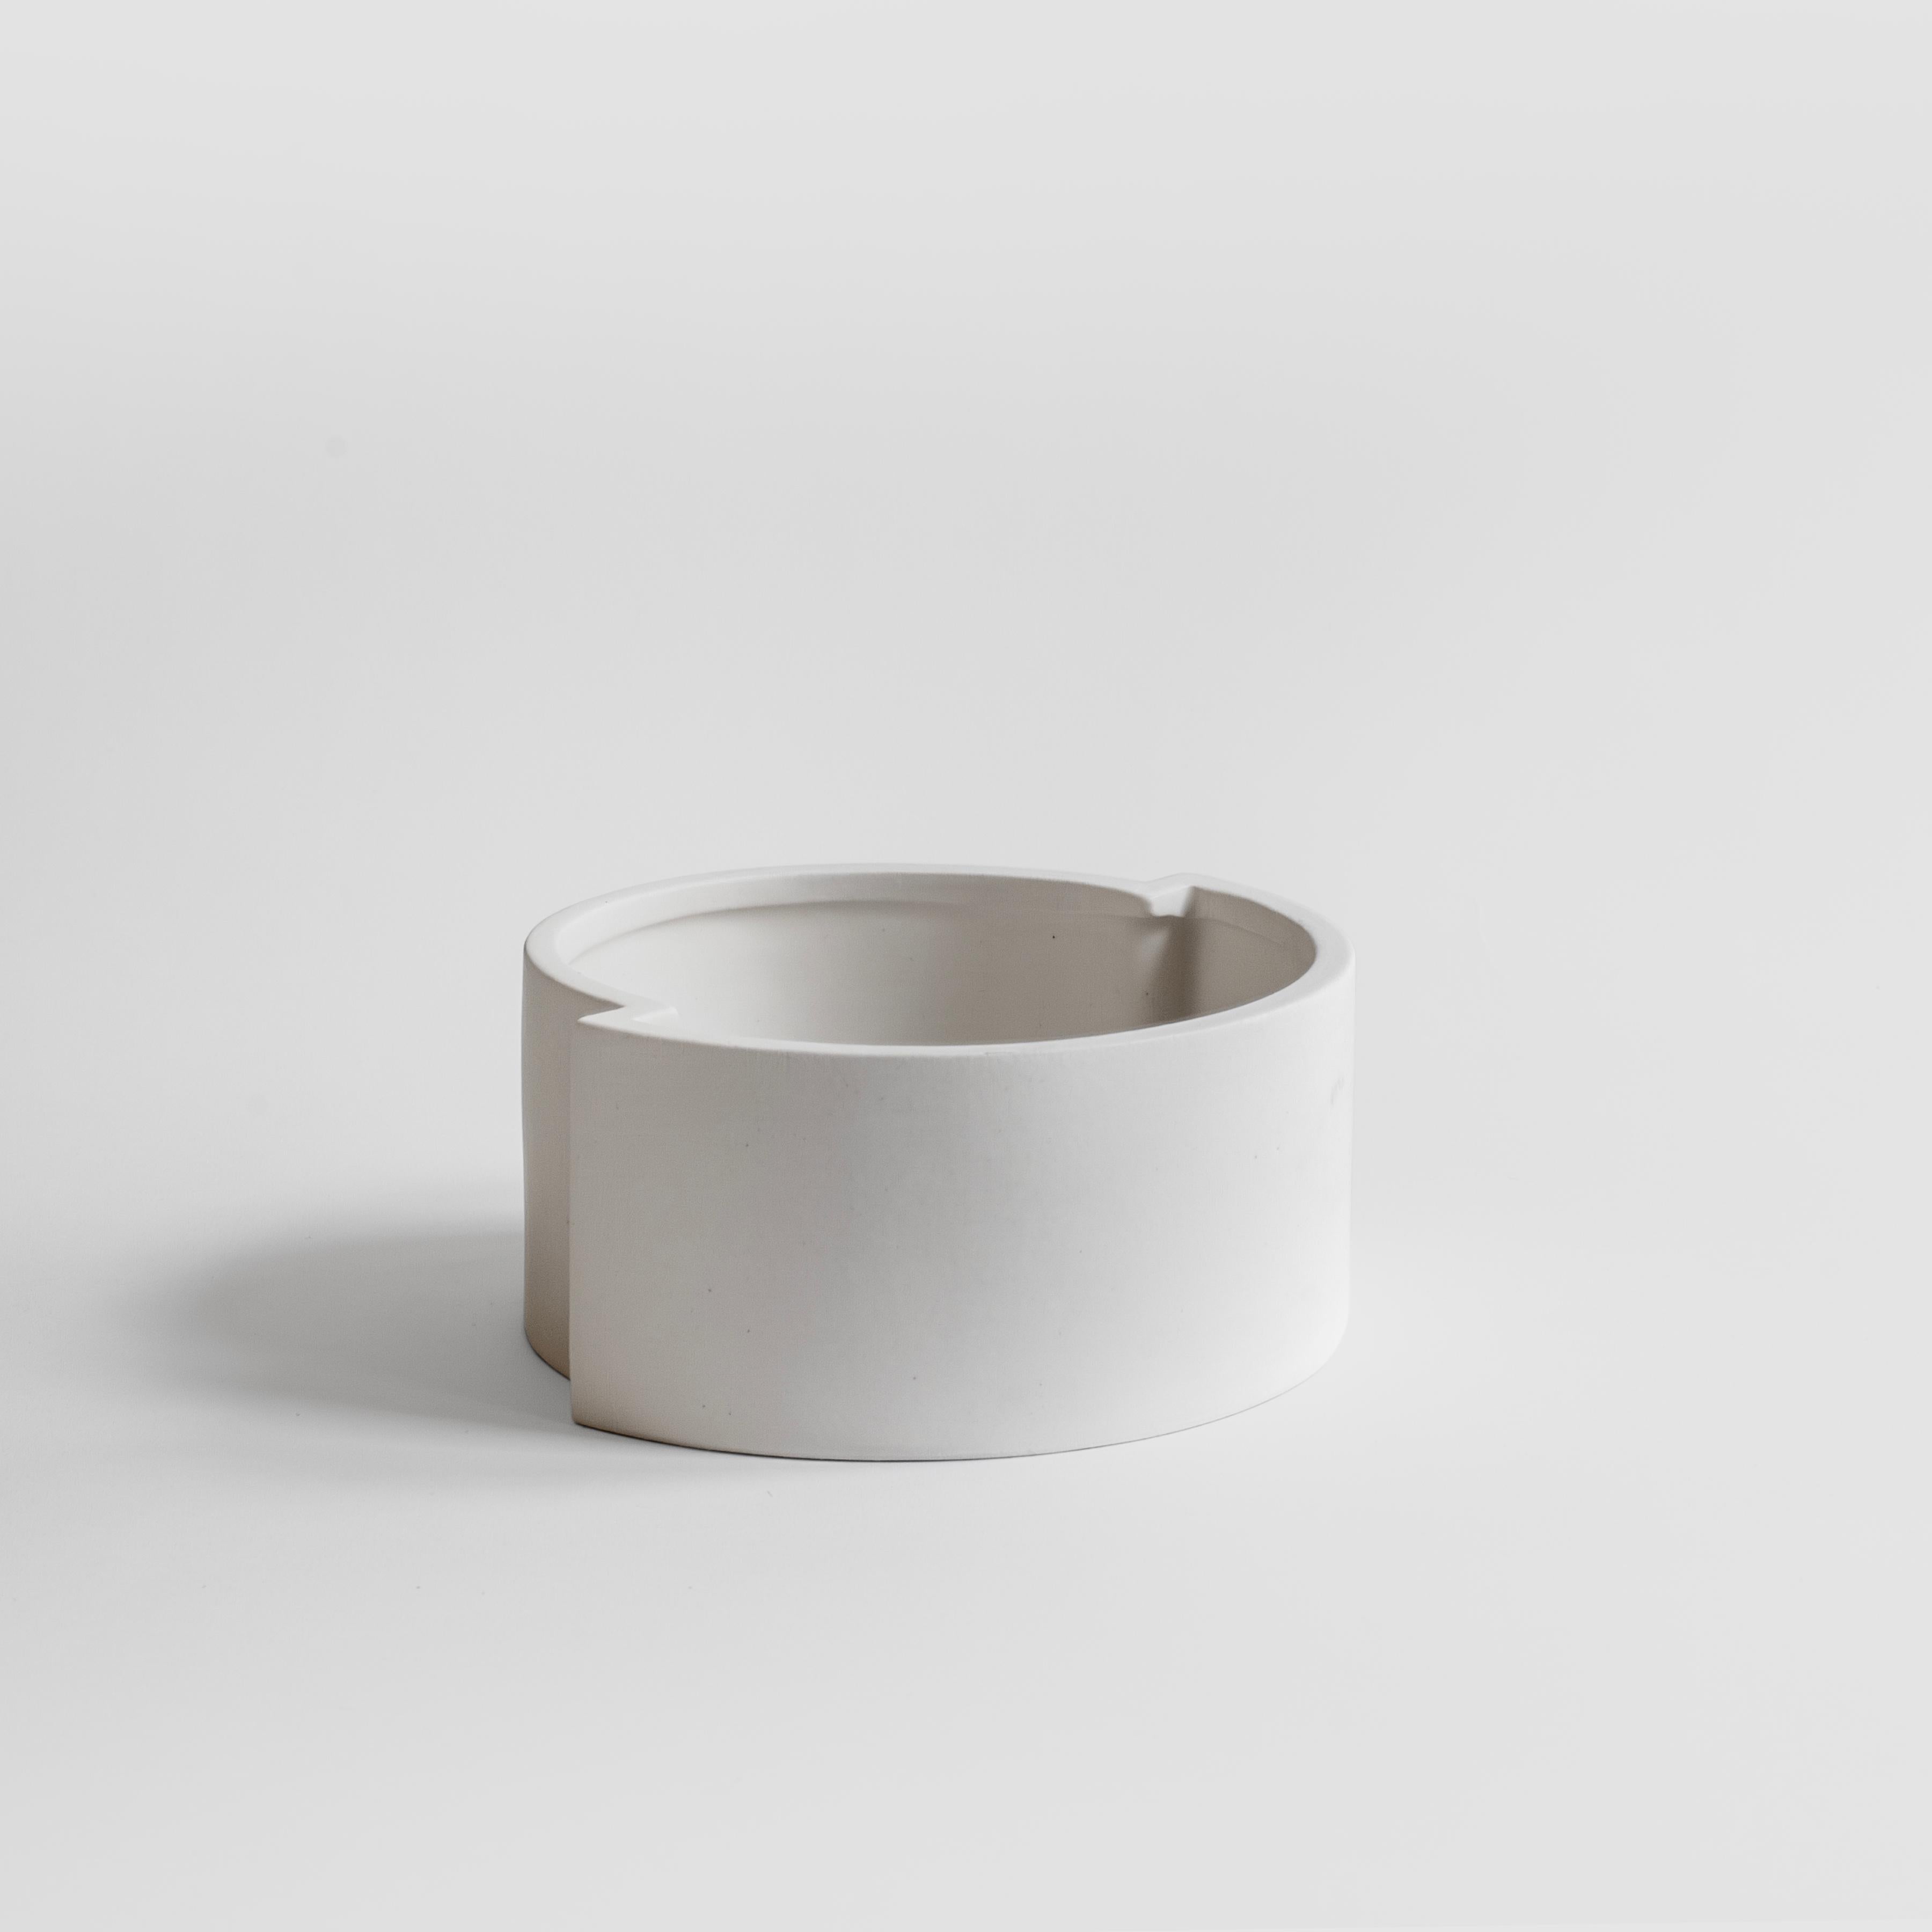 Die minimalistische und verspielte Obstschale aus gegossener Keramik mit einer weißen, matten, kristallinen Glasur wird in Mailand handgefertigt.
Als Teil der von der Künstlerin Sara Khamisi entworfenen Kollektion 